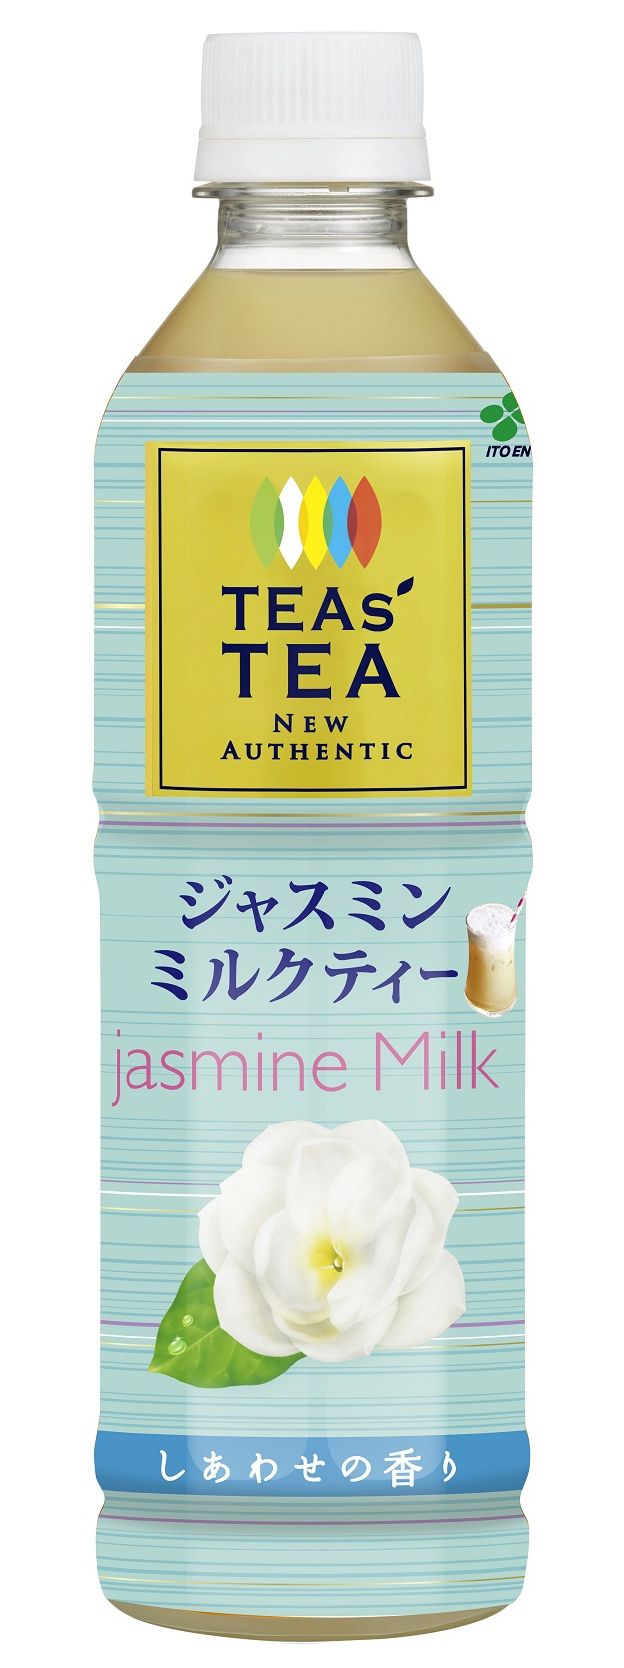 「TEAs' TEA NEW AUTHENTIC ジャスミンミルクティー」5月8日（月）より販売開始 | 新着情報 | 伊藤園